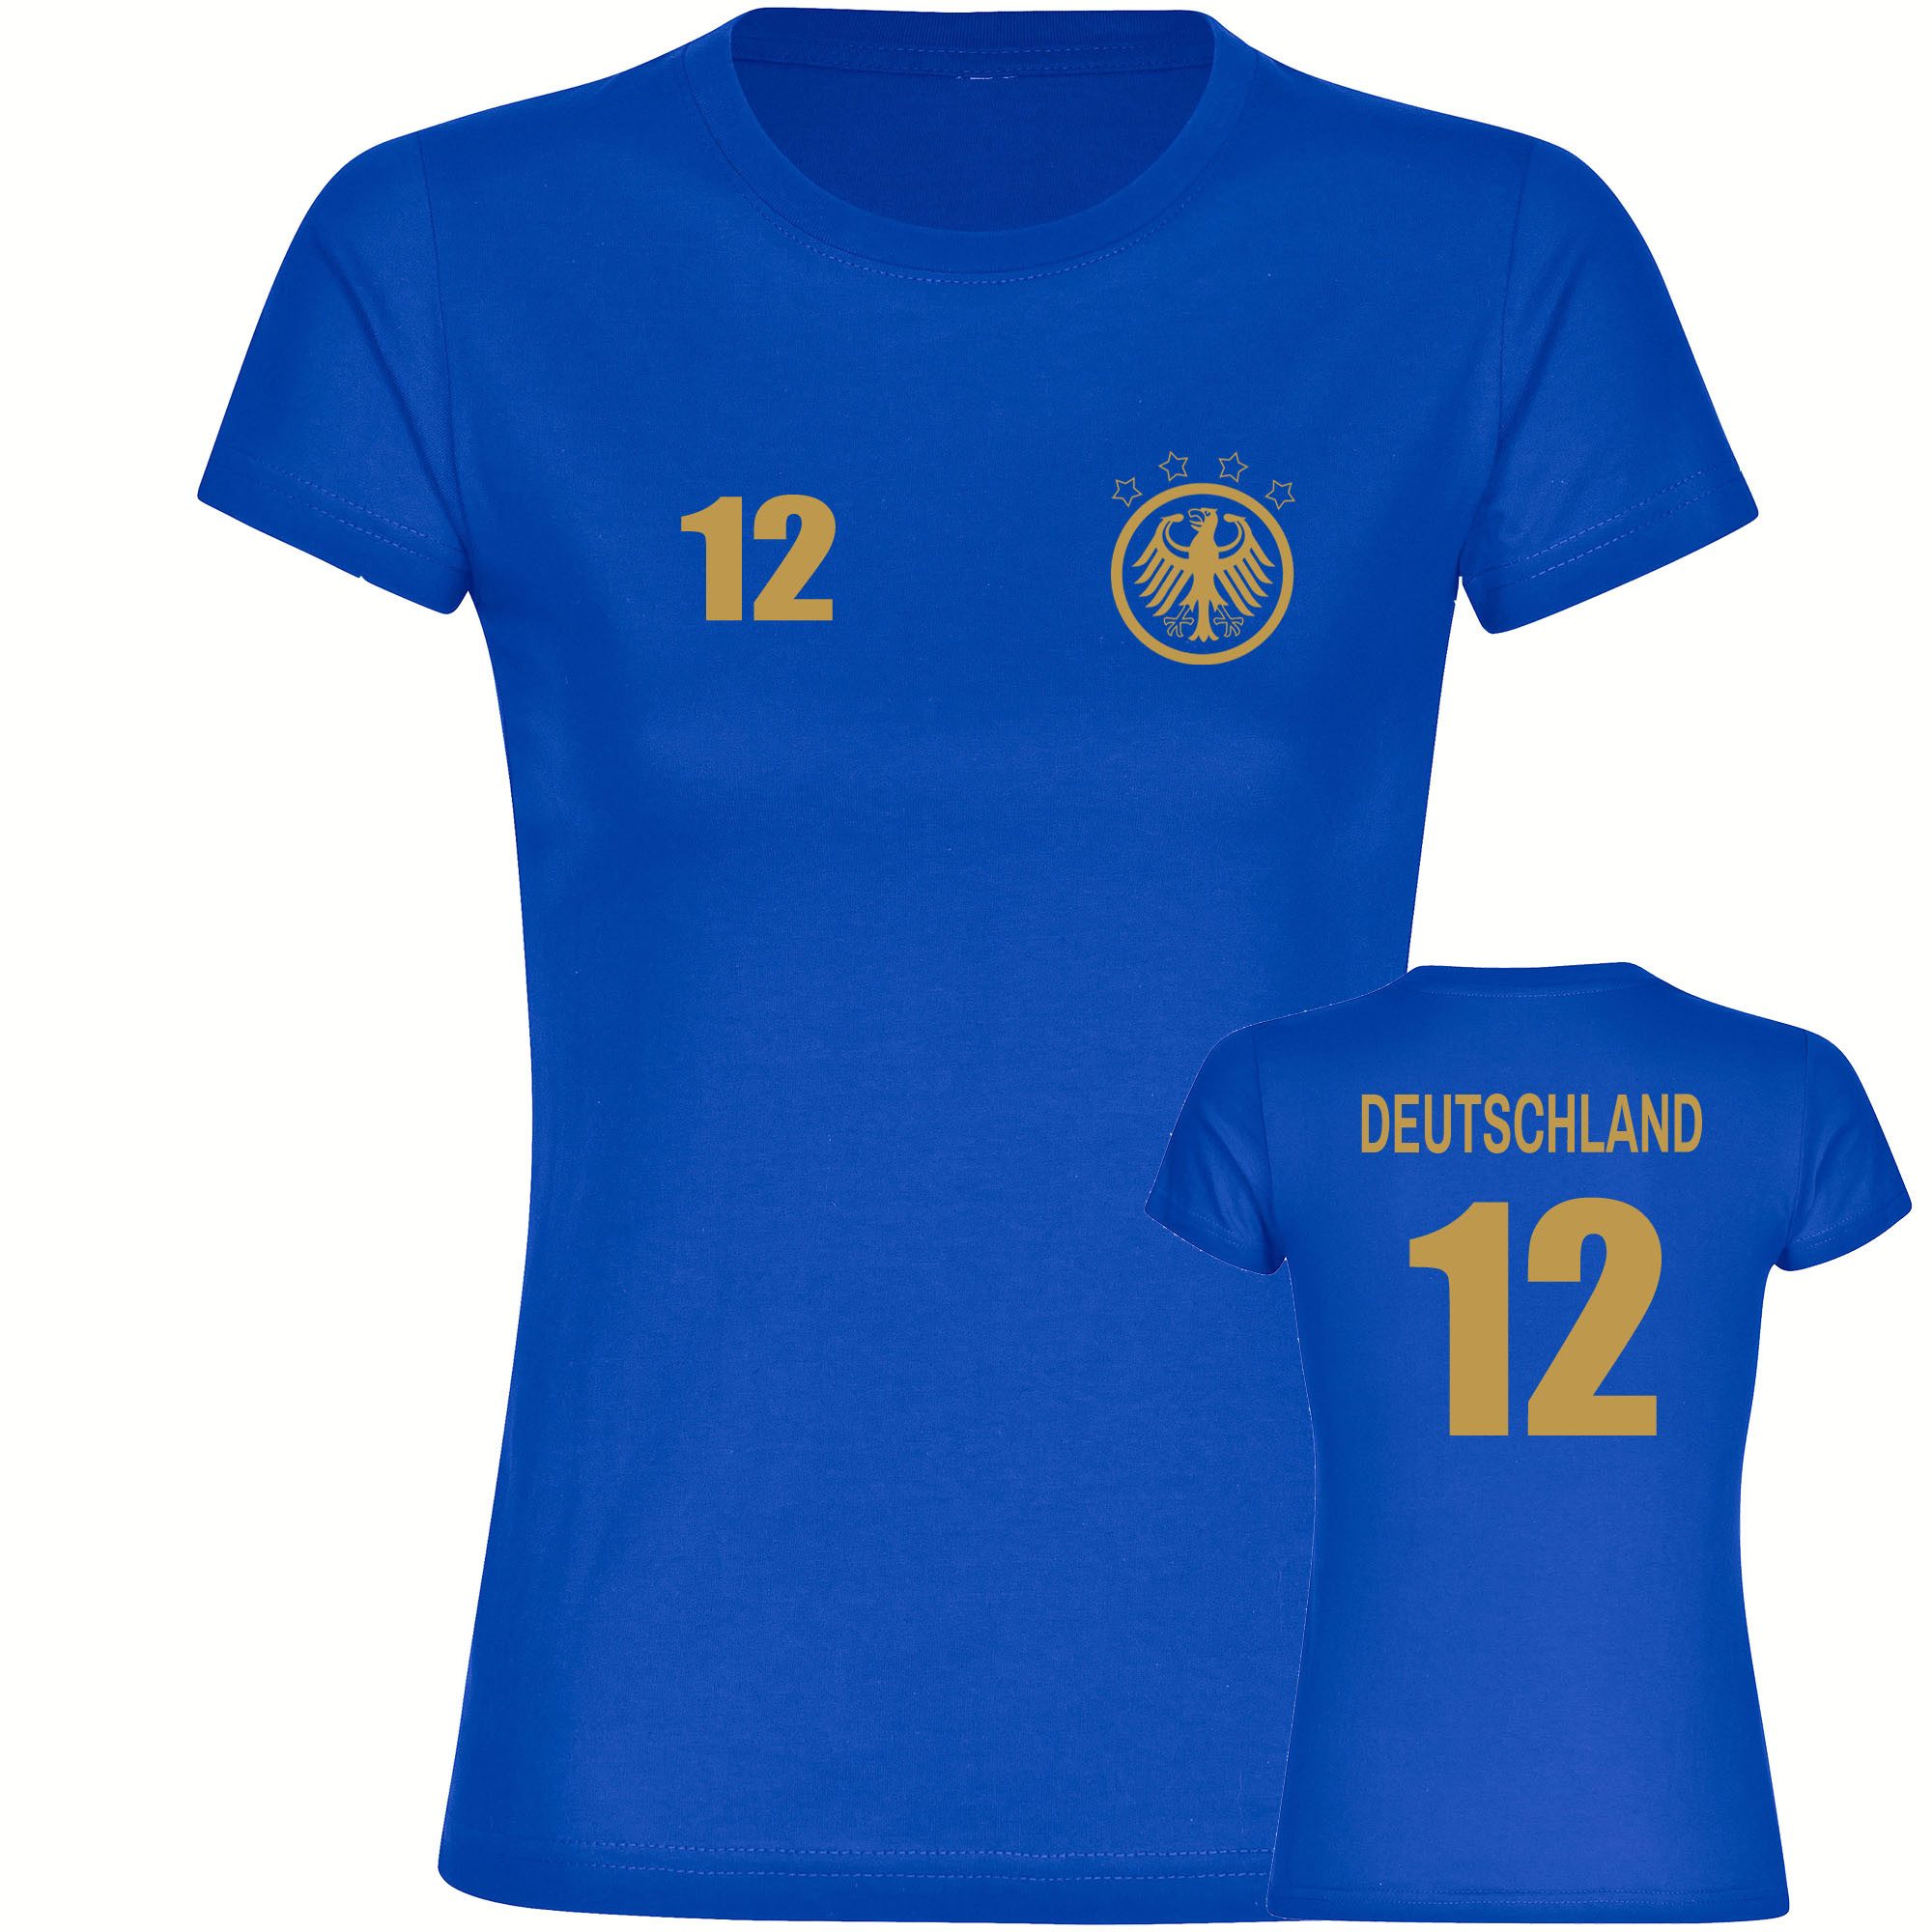 multifanshop T-Shirt Damen Deutschland - Adler Retro Trikot 12 Gold - Frauen